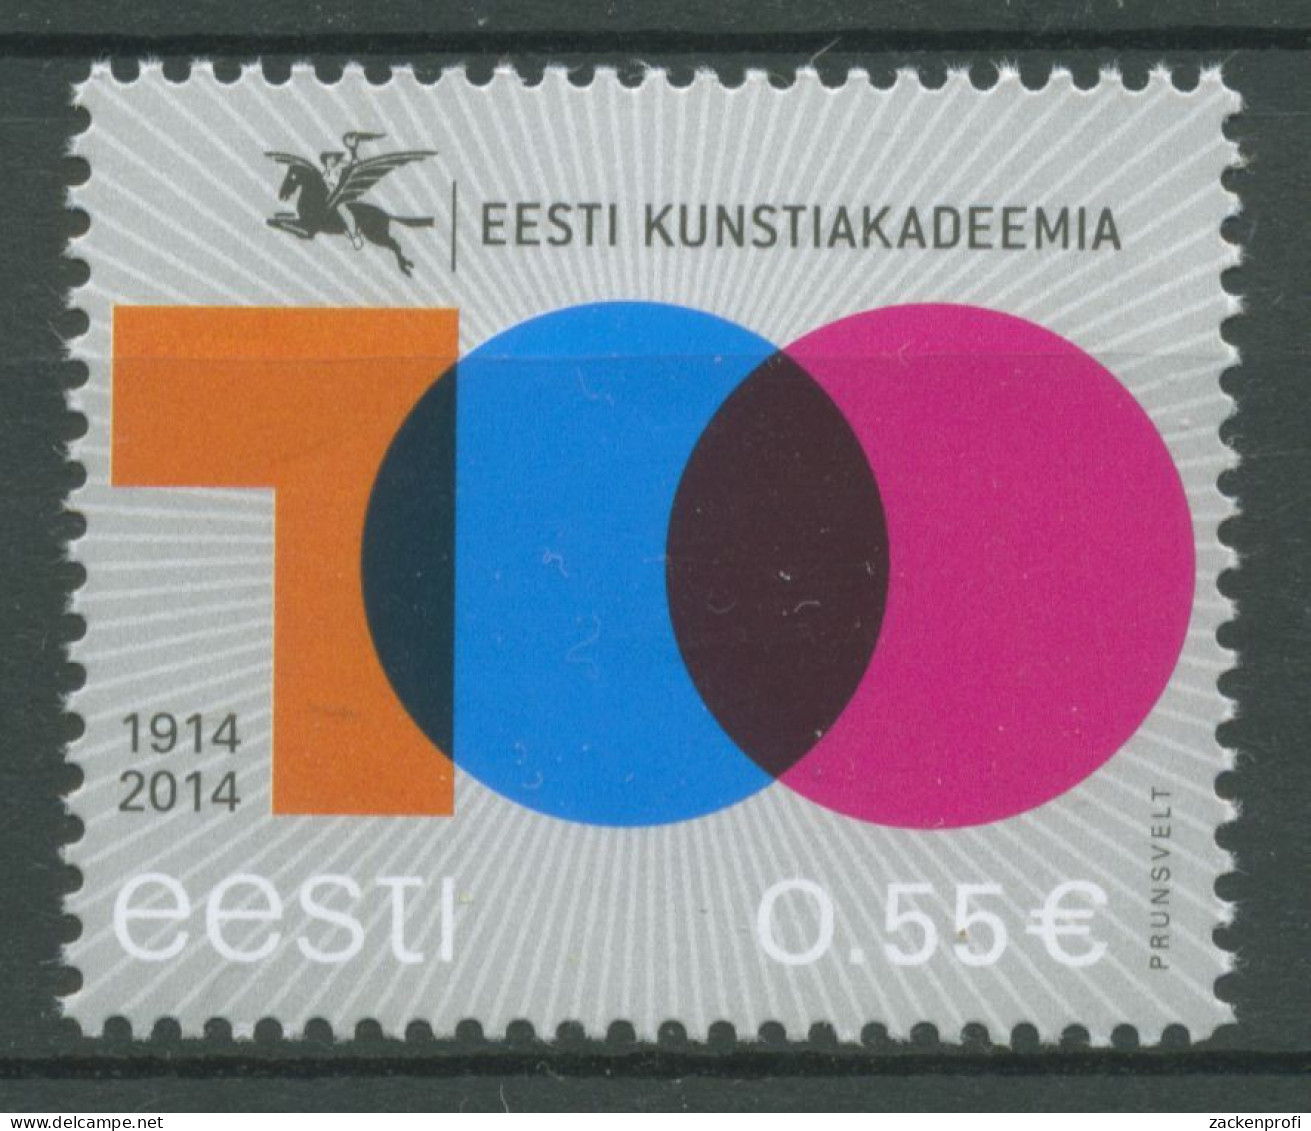 Estland 2014 Kunstakademie 804 Postfrisch - Estonia